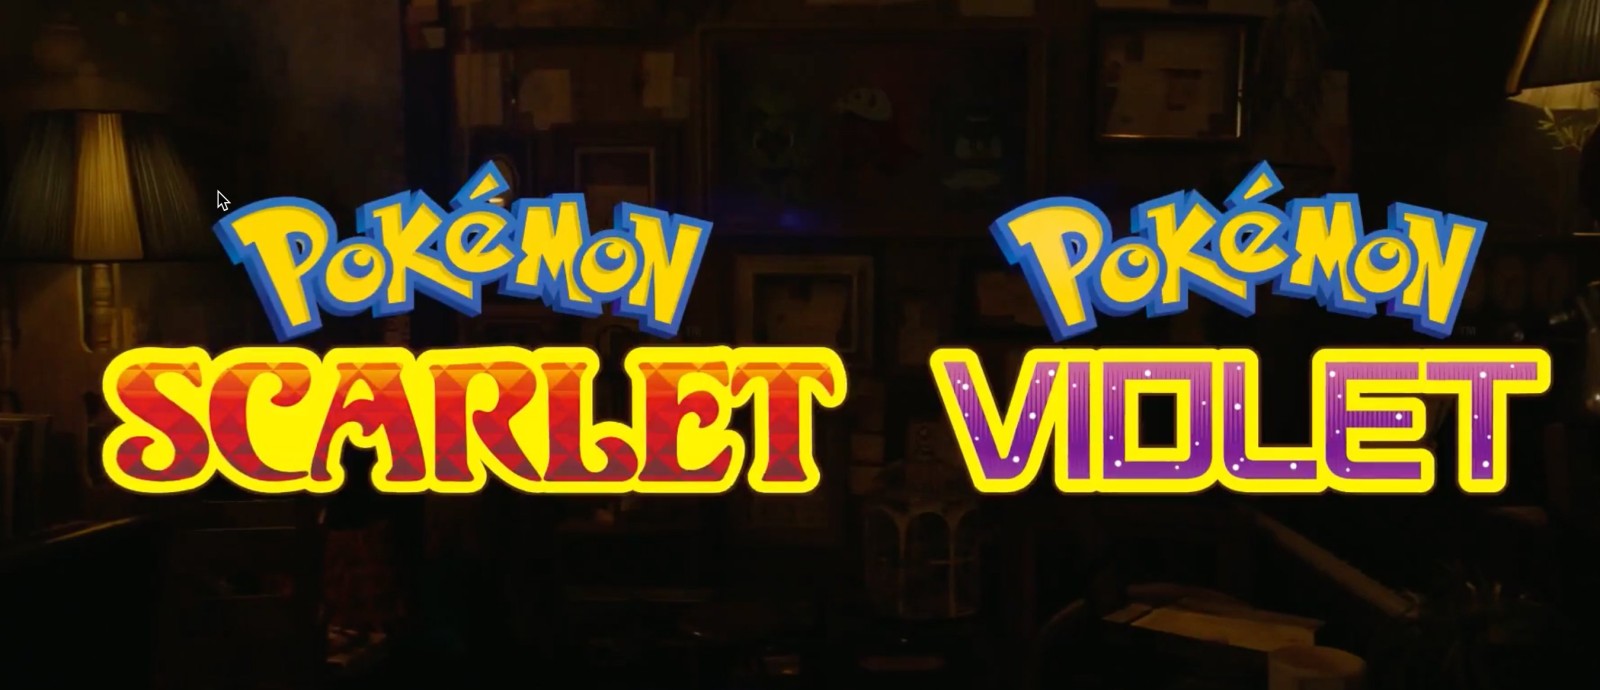 ¡La 9a generación de Pokémon ha sido anunciada! Conoce Pokémon Scarlet y Violet 1